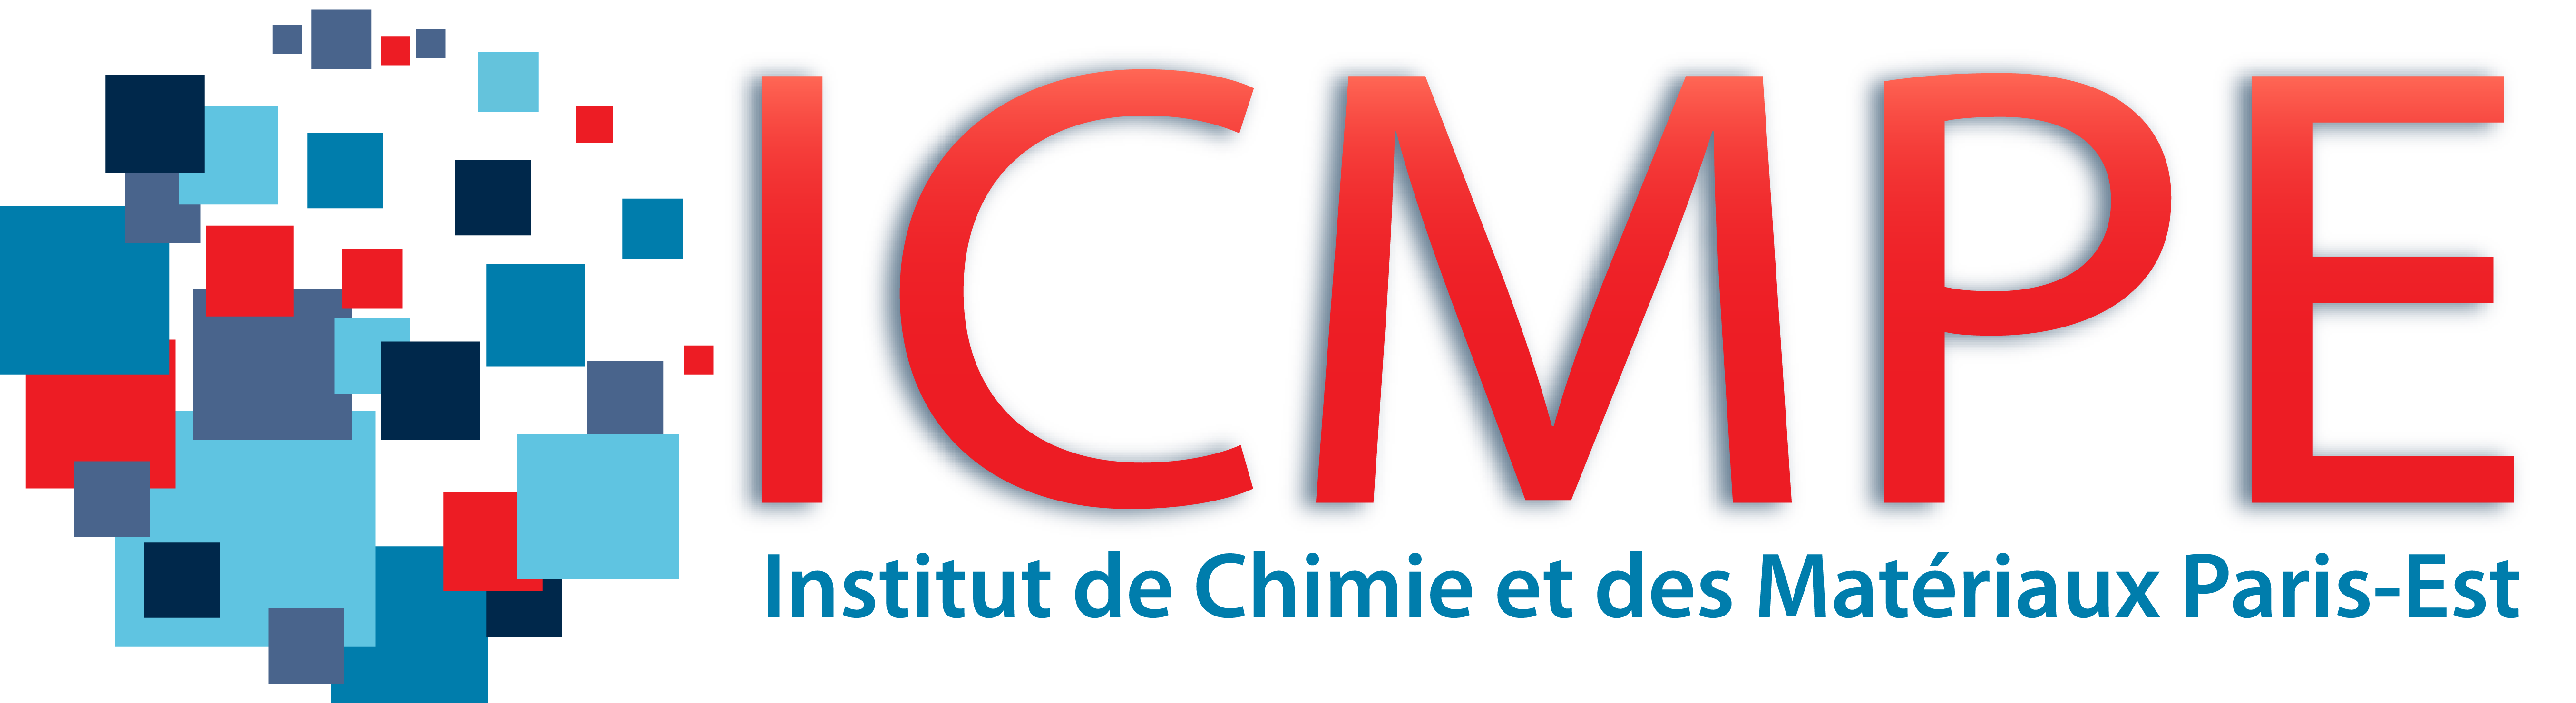 Institut de Chimie et des Matériaux Paris-Est